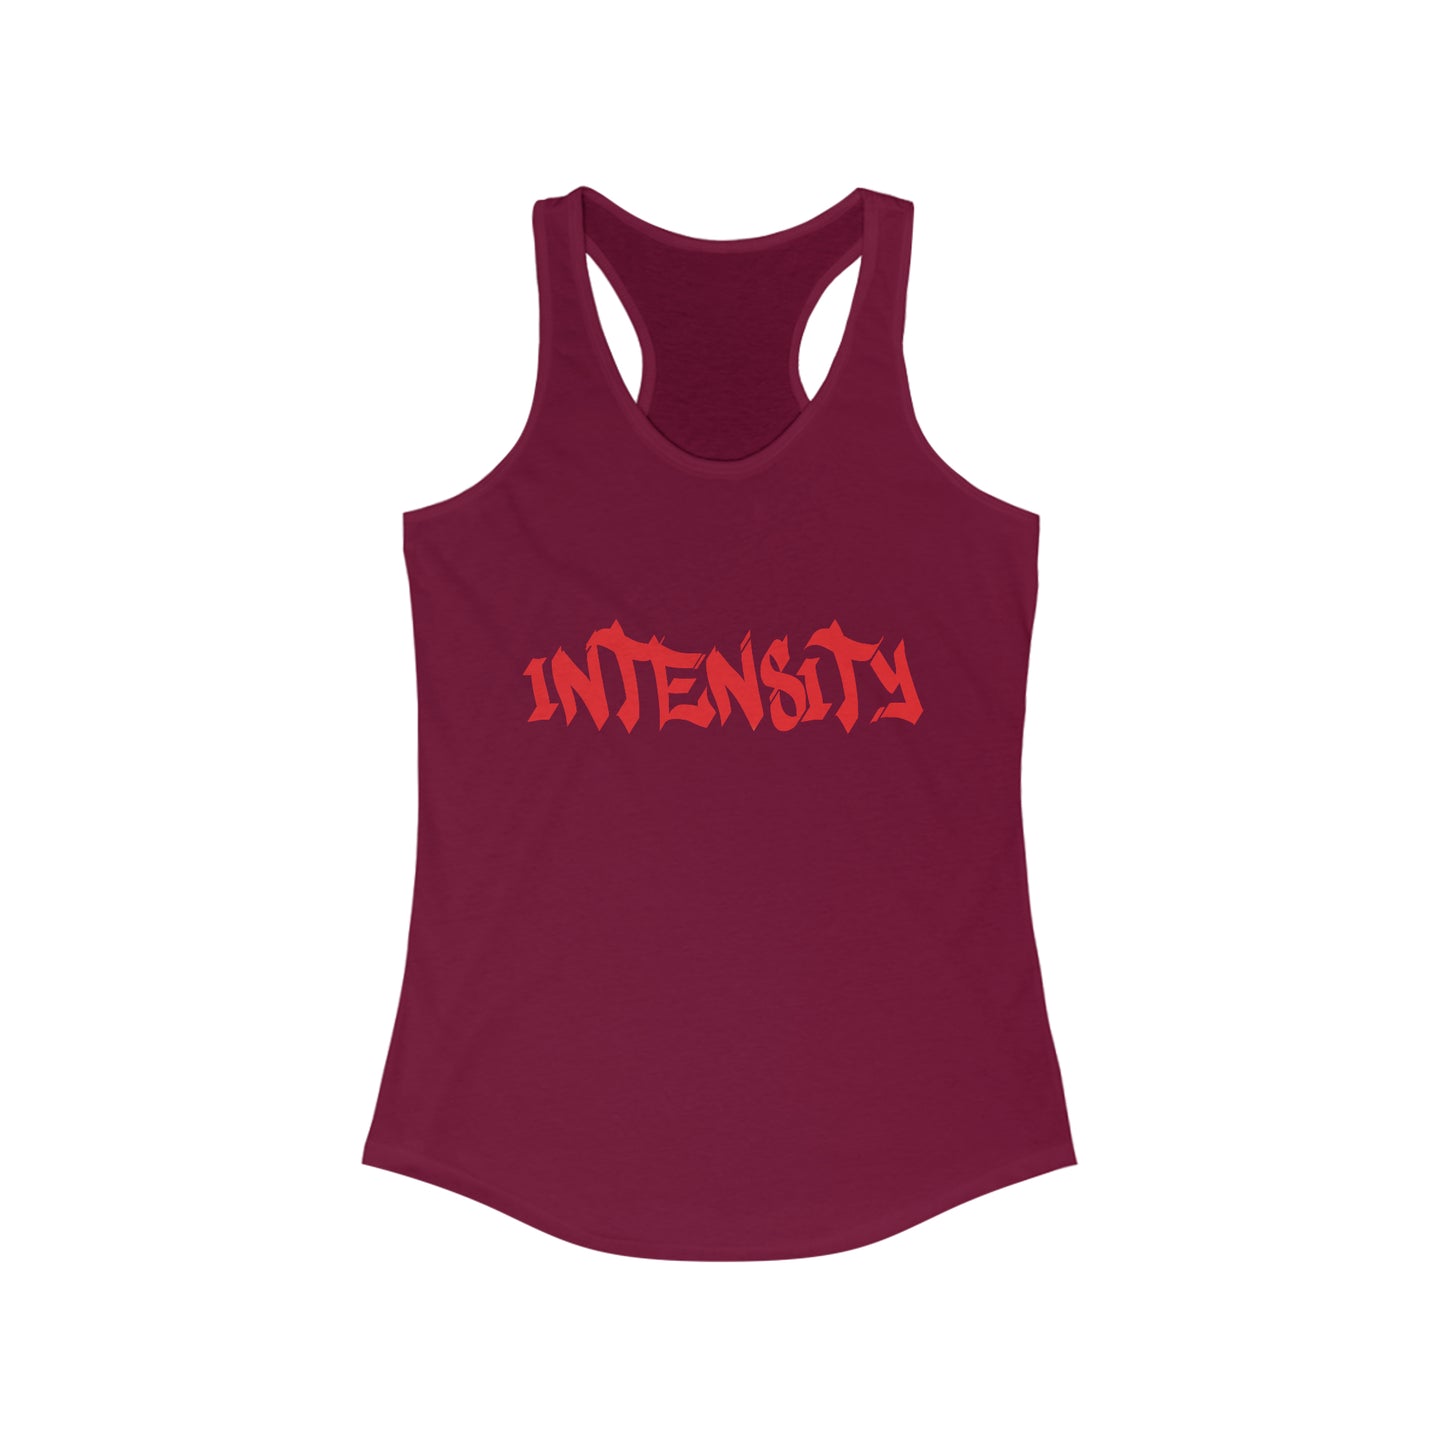 Women's "INTENSITY" Women's Tank Top Red Logo